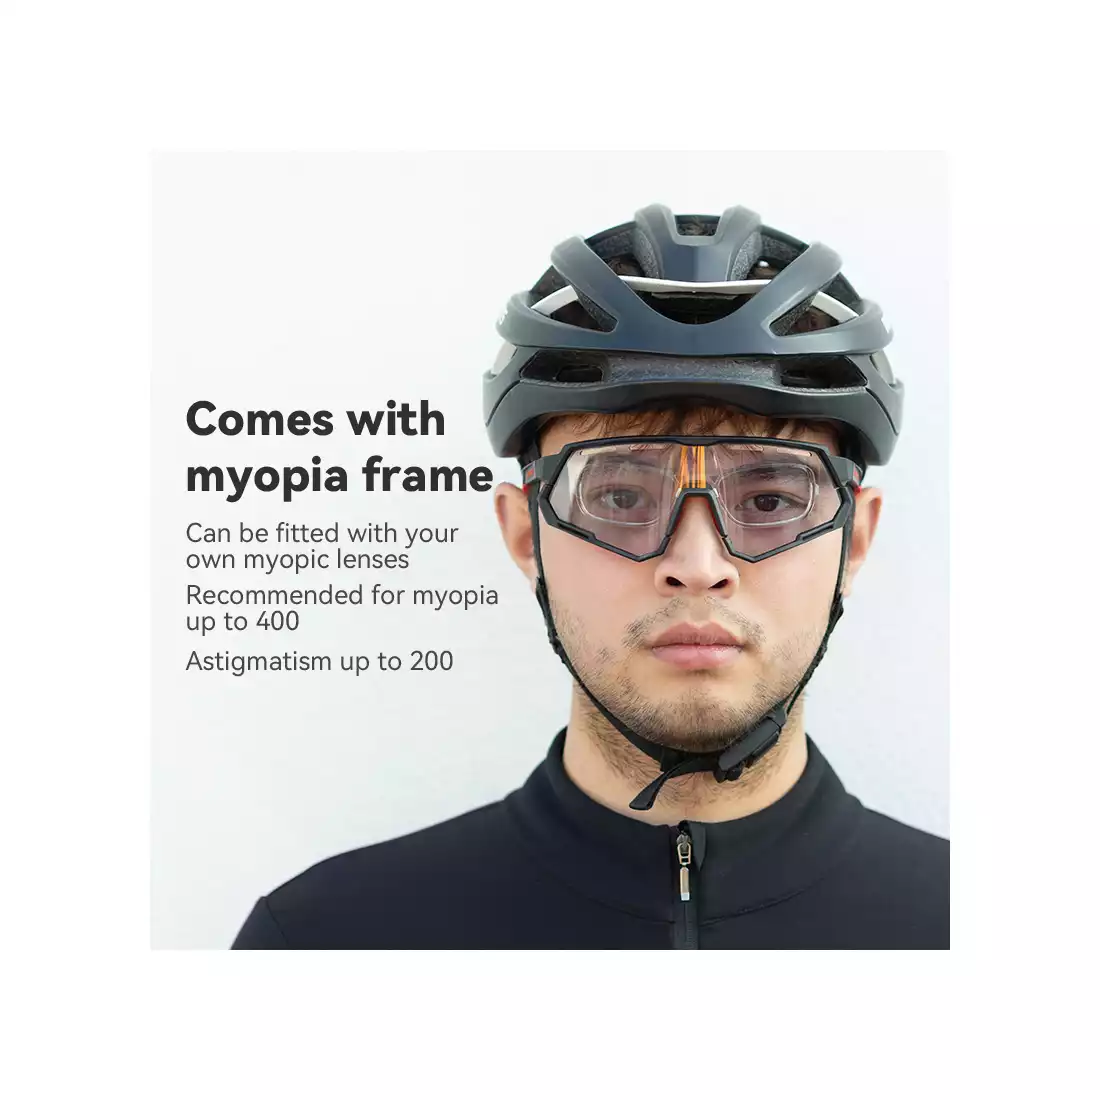 Rockbros 14210004001  Fahrrad/Sportbrille mit polarisierten, photochromem, 2 austauschbaren Gläsern schwarz-rot